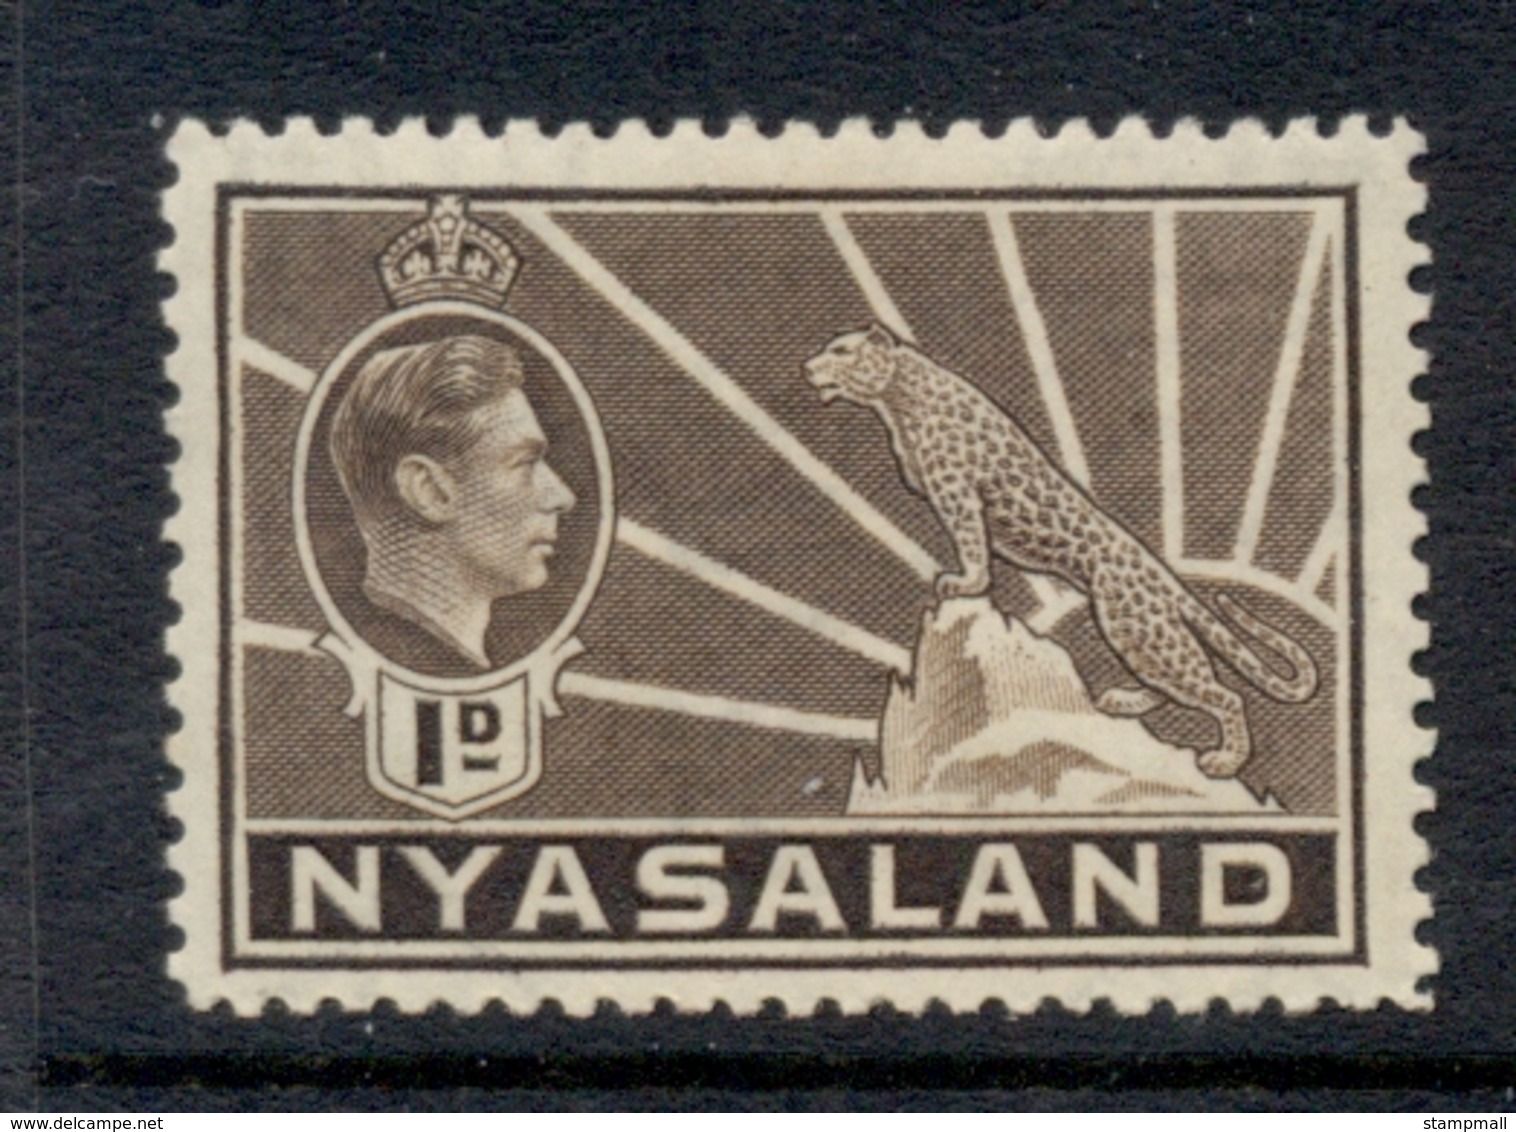 Nyasaland 1938-44 KGVI & Leopard 1d Brown MLH - Nyassaland (1907-1953)